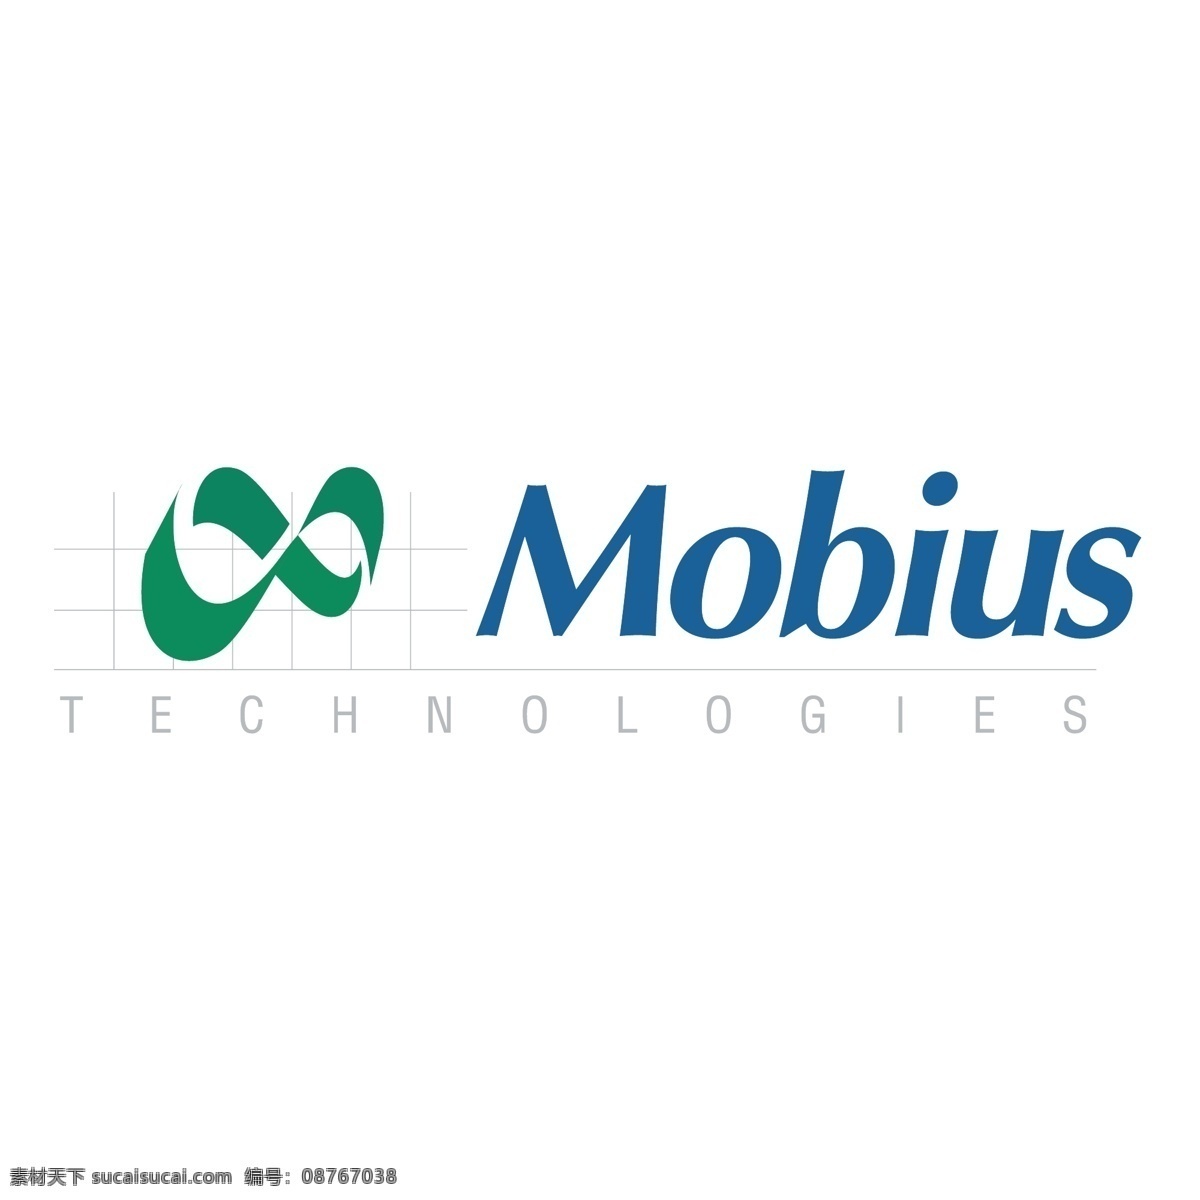 莫比 乌斯带 技术 mobius 图像 矢量 矢量图像 免费 艺术 载体 白色